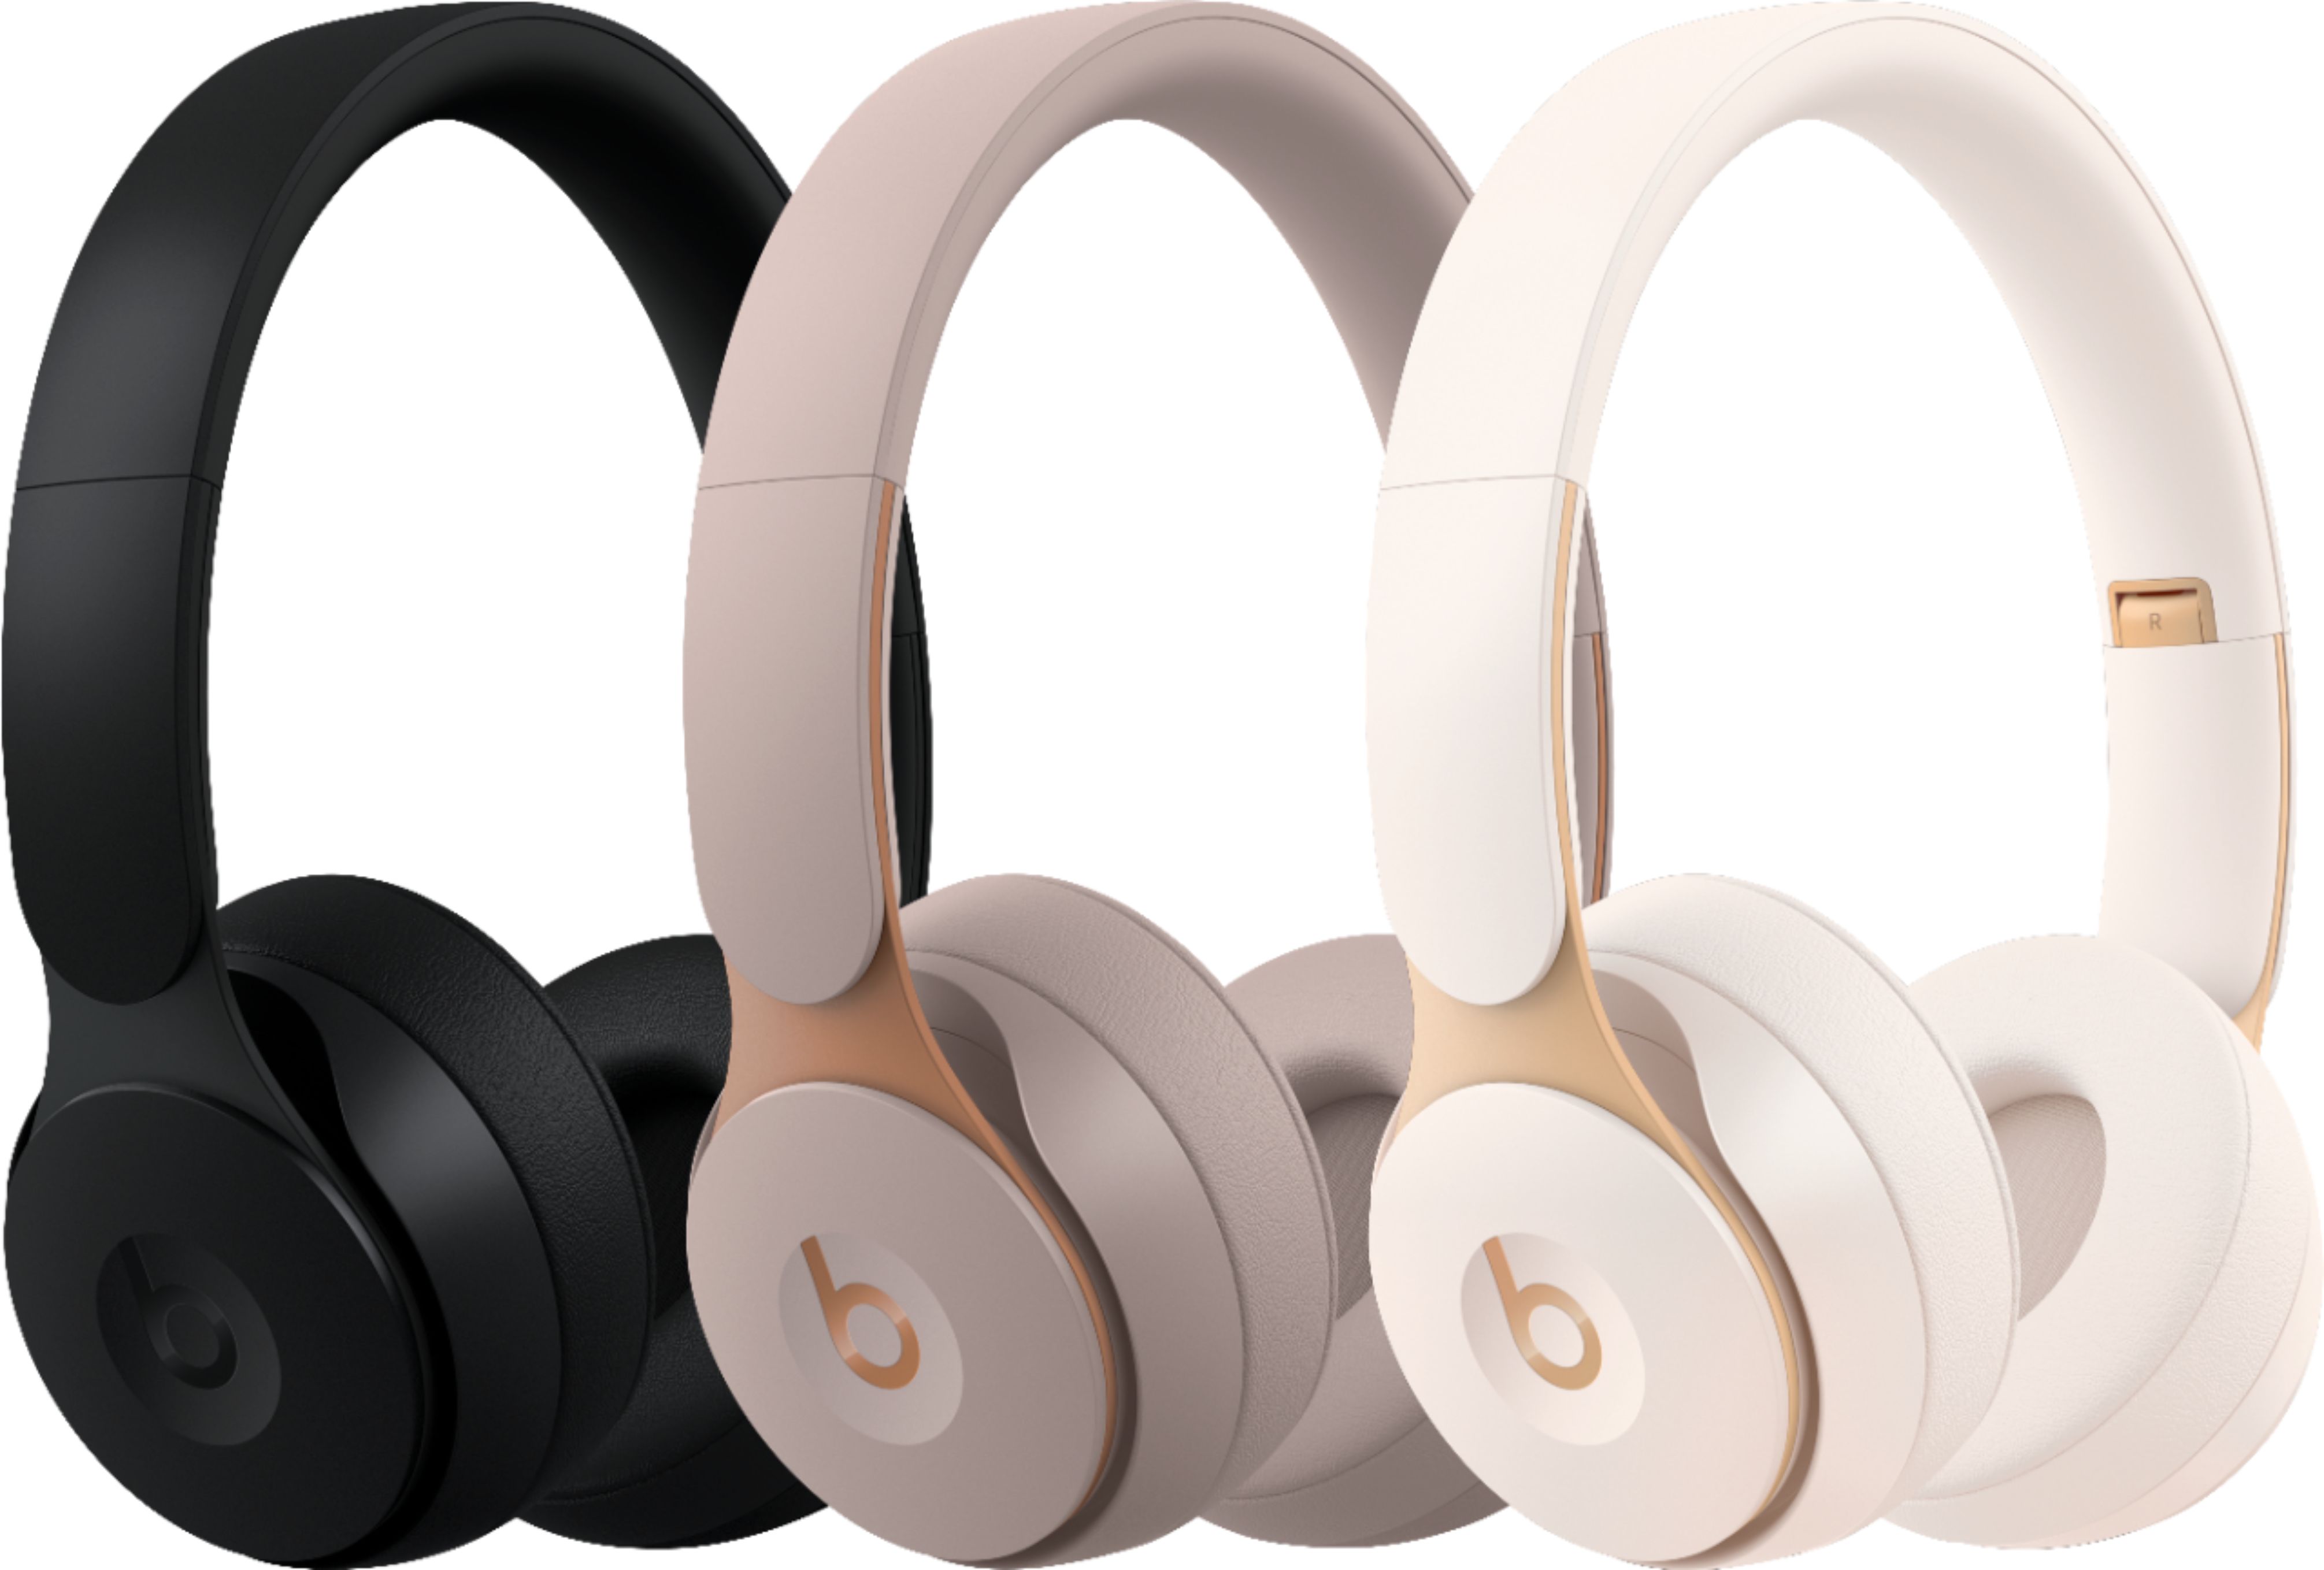 roman Hvem klart Best Buy: Beats by Dr. Dre Solo Pro Wireless Noise Cancelling On-Ear  Headphones Black MRJ62LL/A